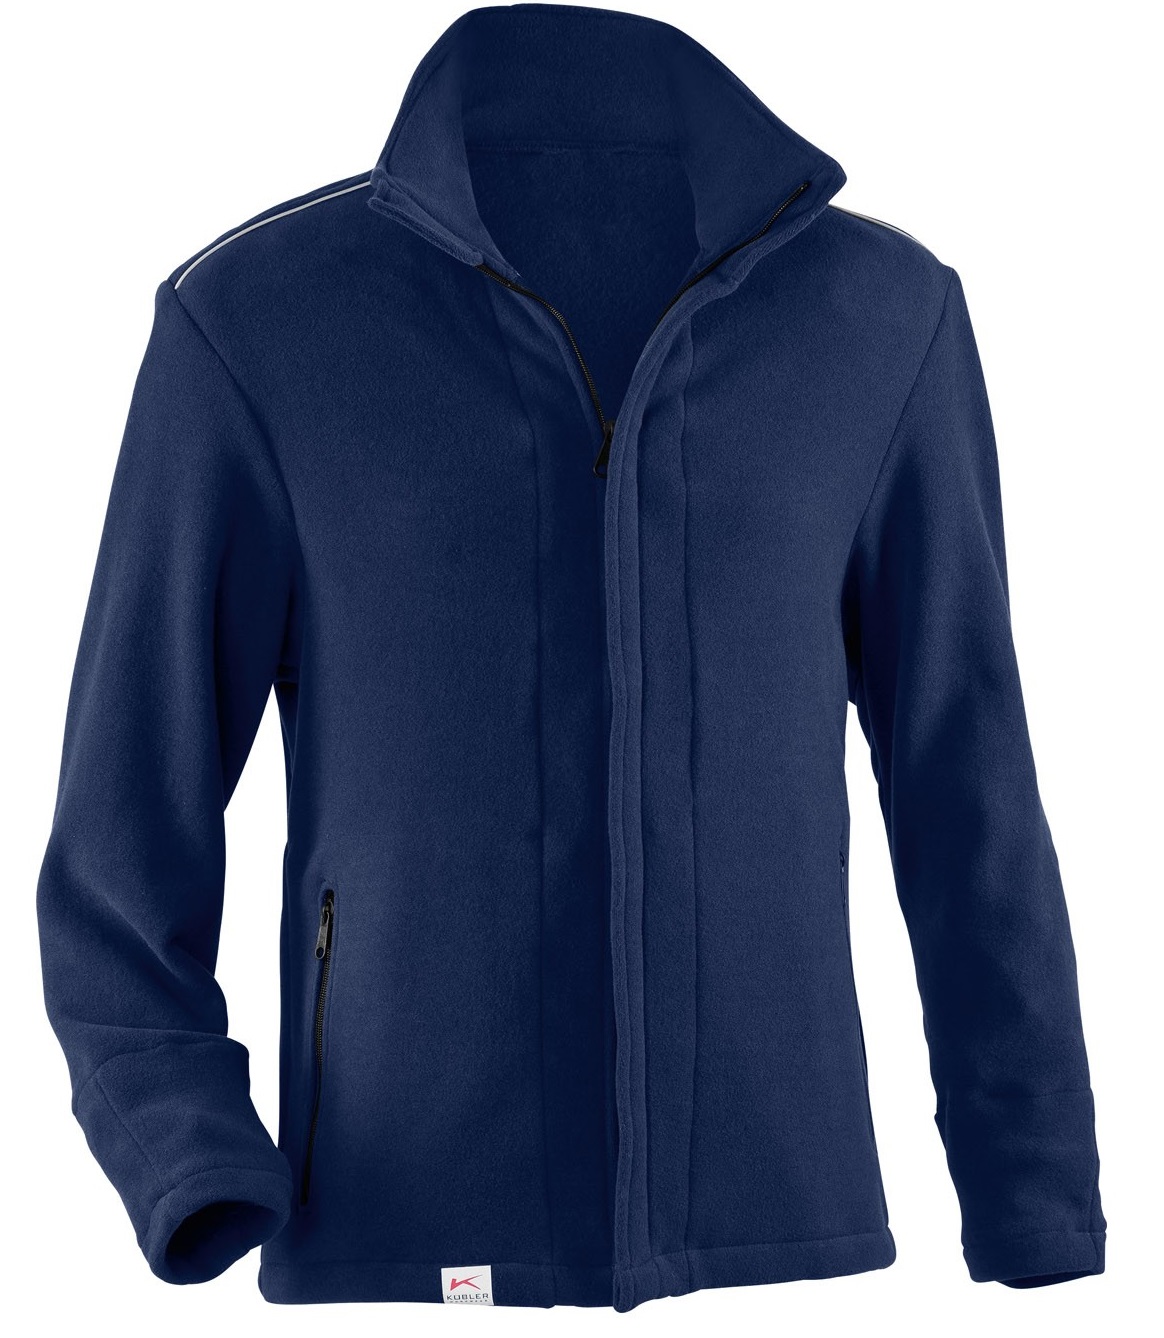 KÜBLER-Kälteschutz-PSA-Safety-X8-Fleece-Arbeits-Berufs-Jacke, ca. 360g/m², dunkelblau